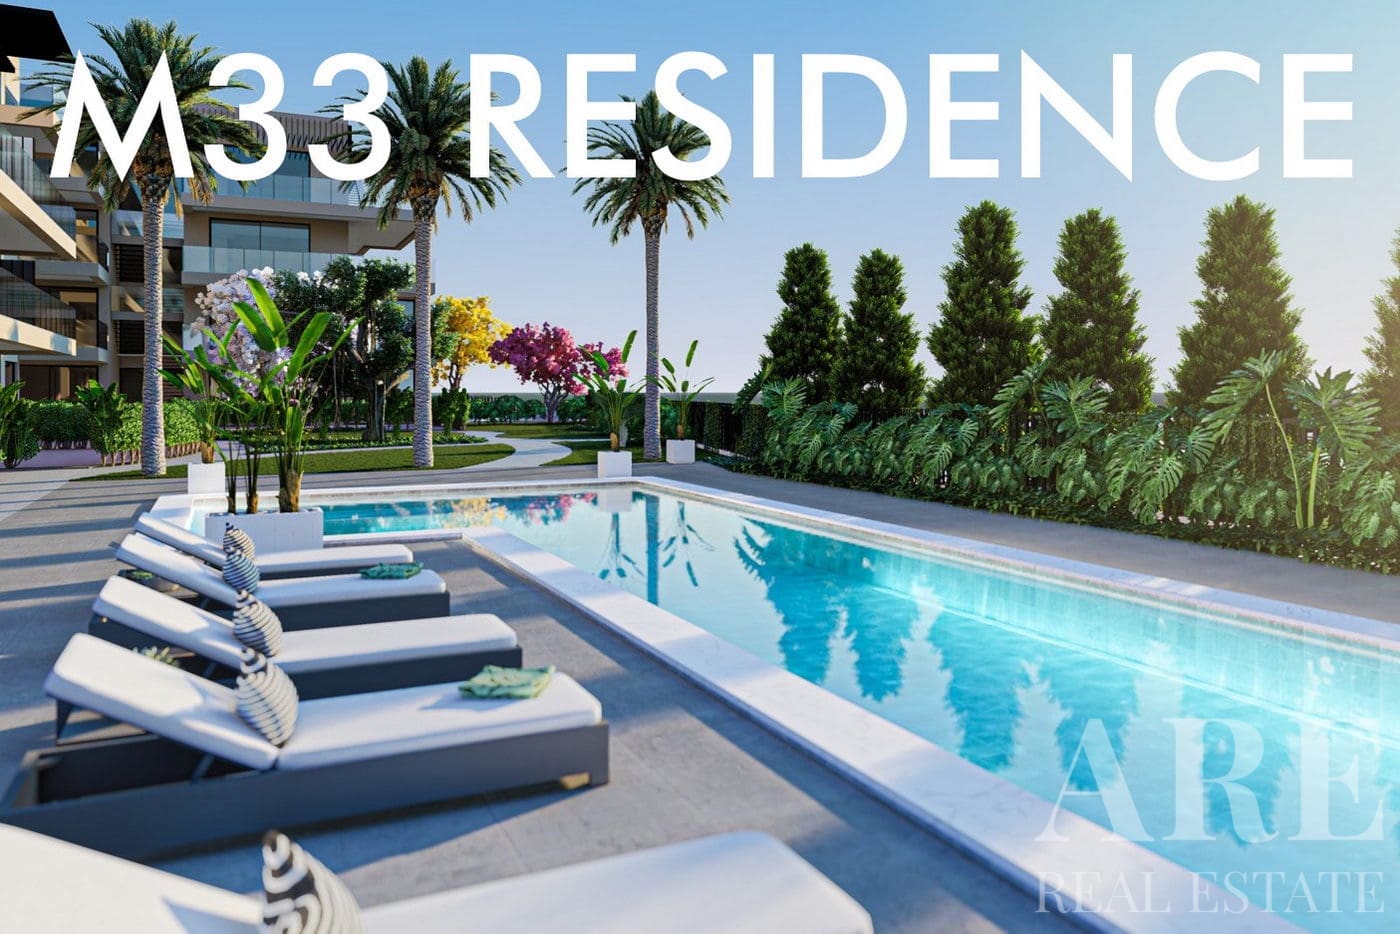 Presentación del condominio M33 Residence